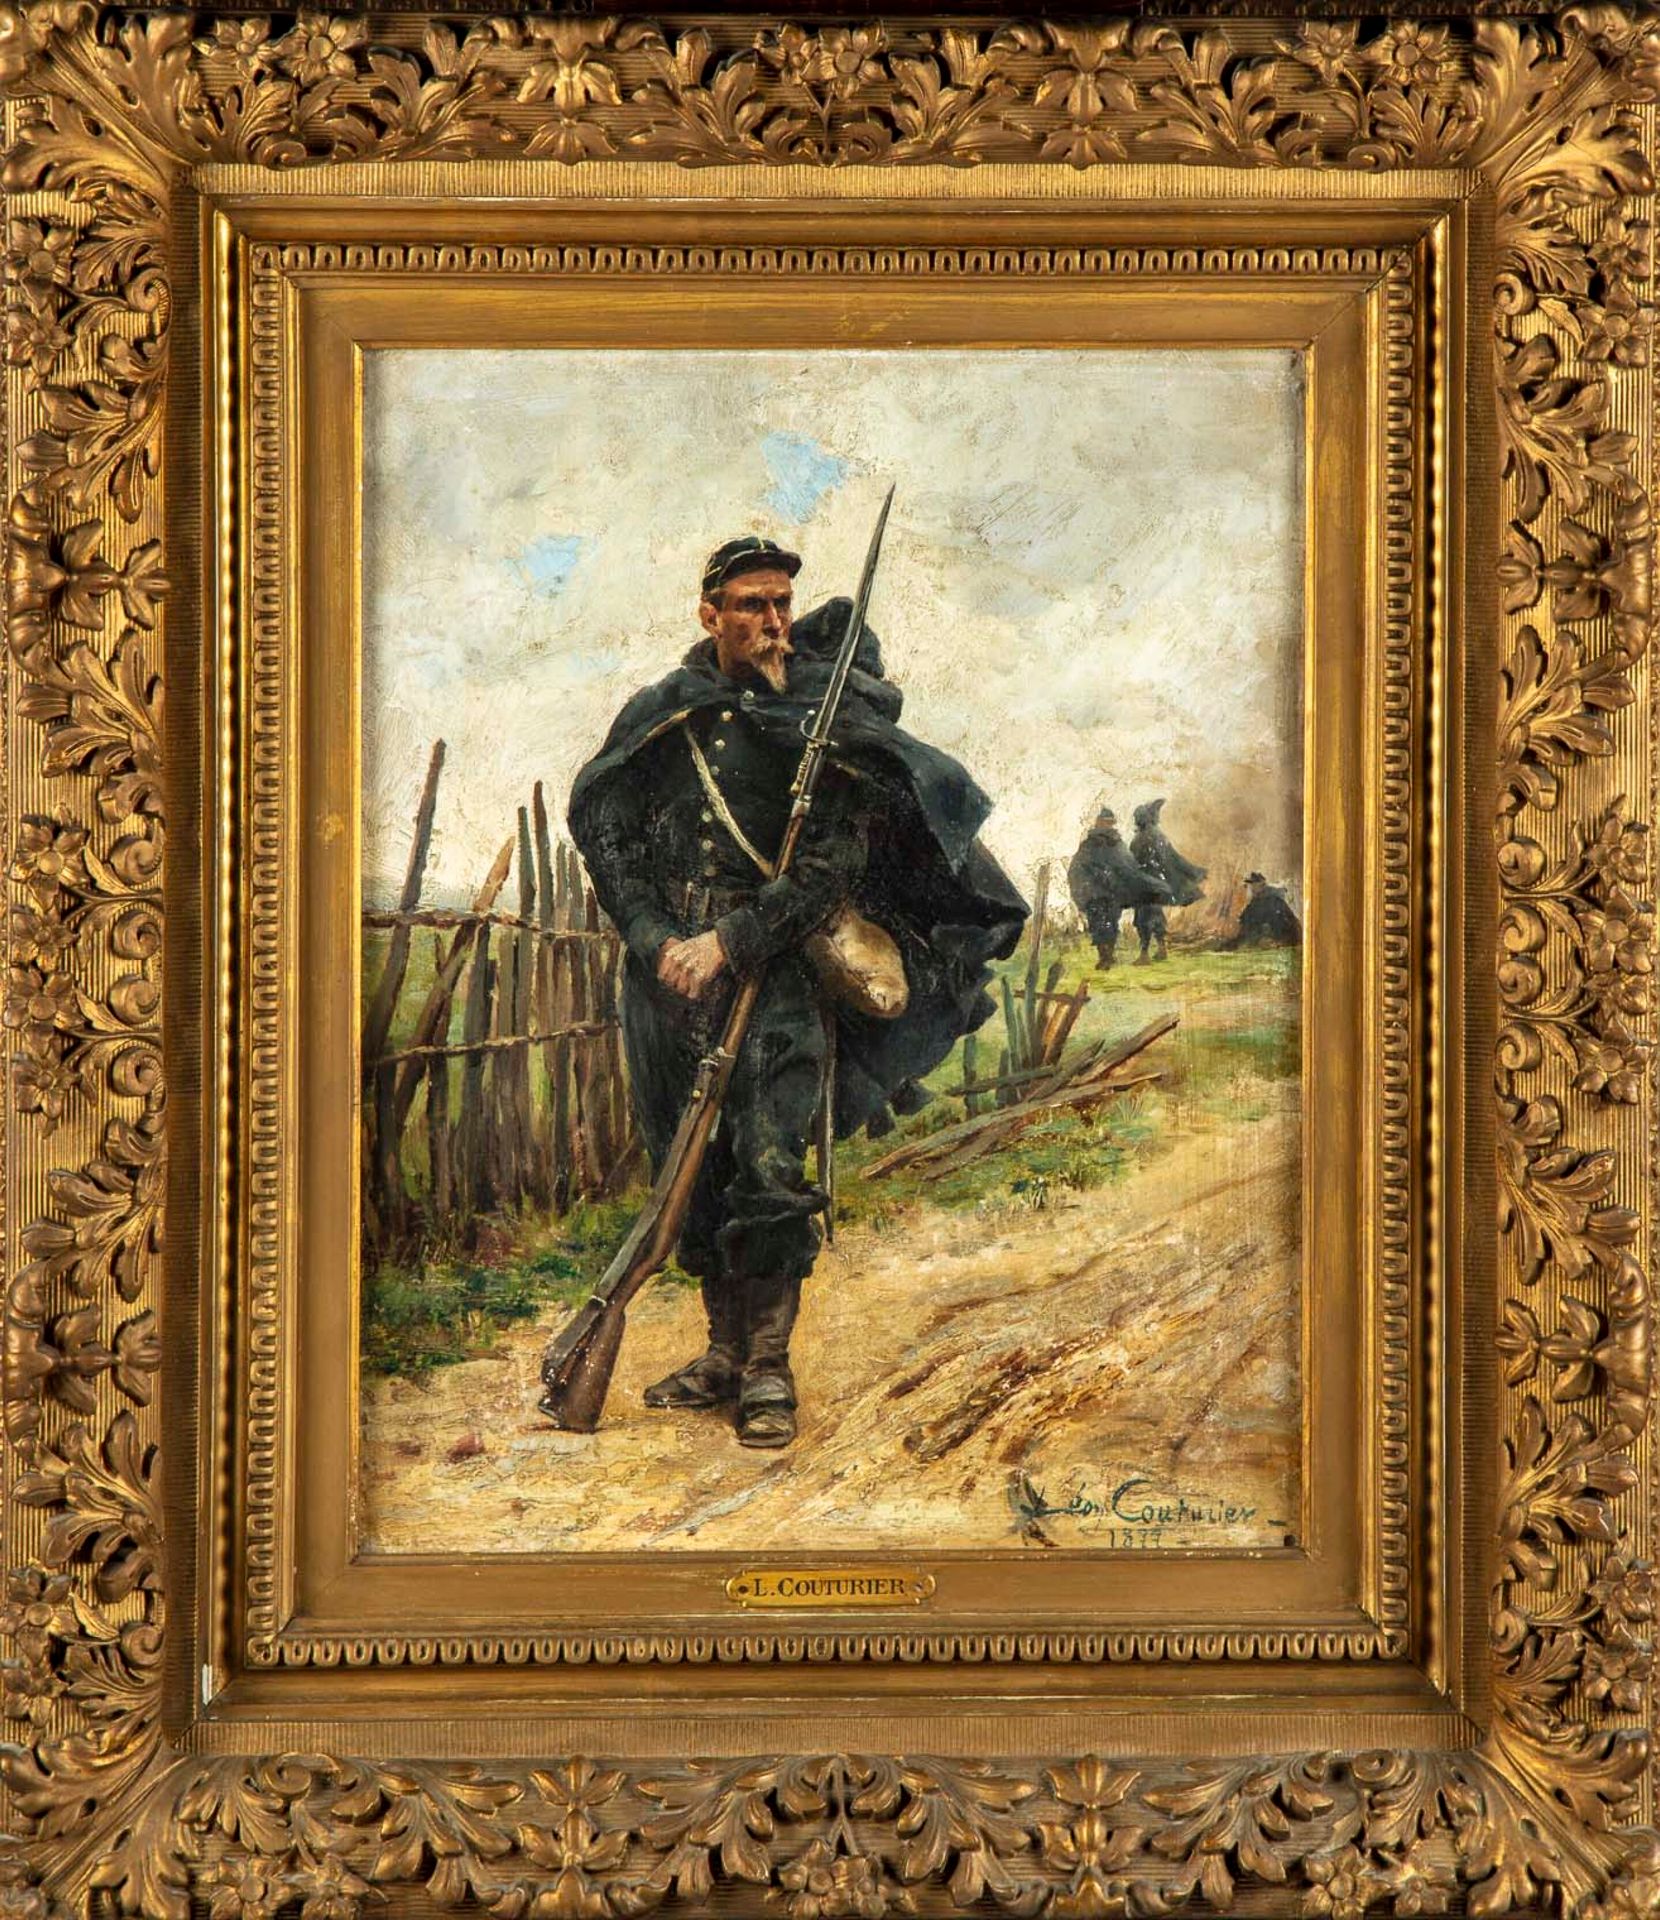 Léon COUTURIER 莱昂-库图里埃 (1842 -1935)

士兵在休息

面板油画，右下角有签名，日期为1877年

41 x 32 cm

非常&hellip;